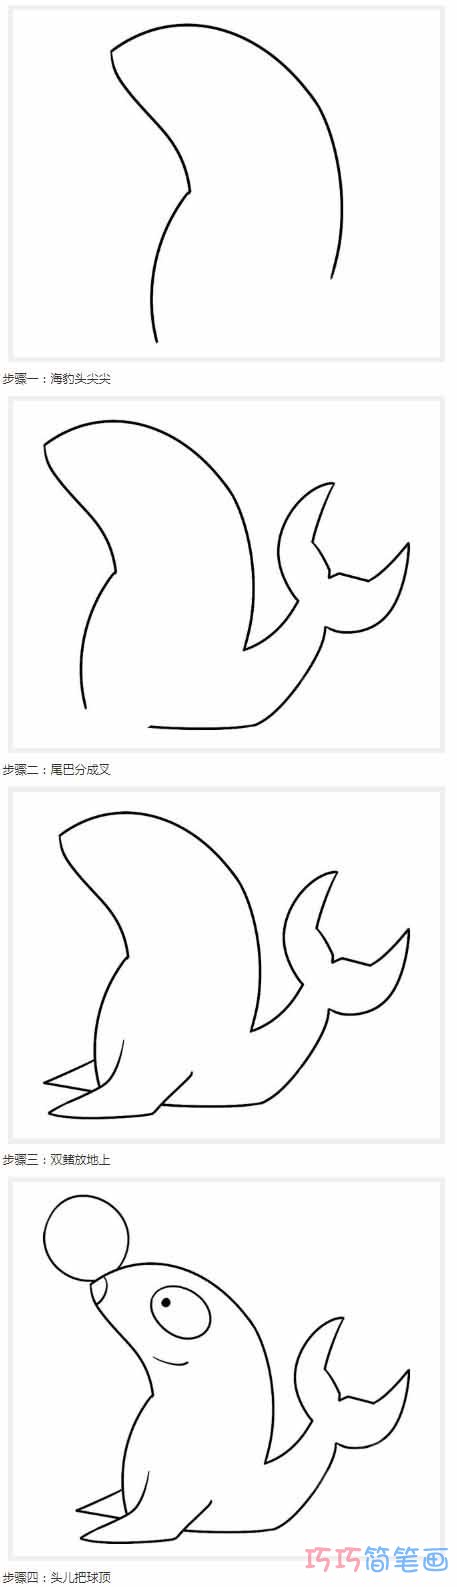 海豹怎么画可爱简洁 带步骤图海报简笔画图片